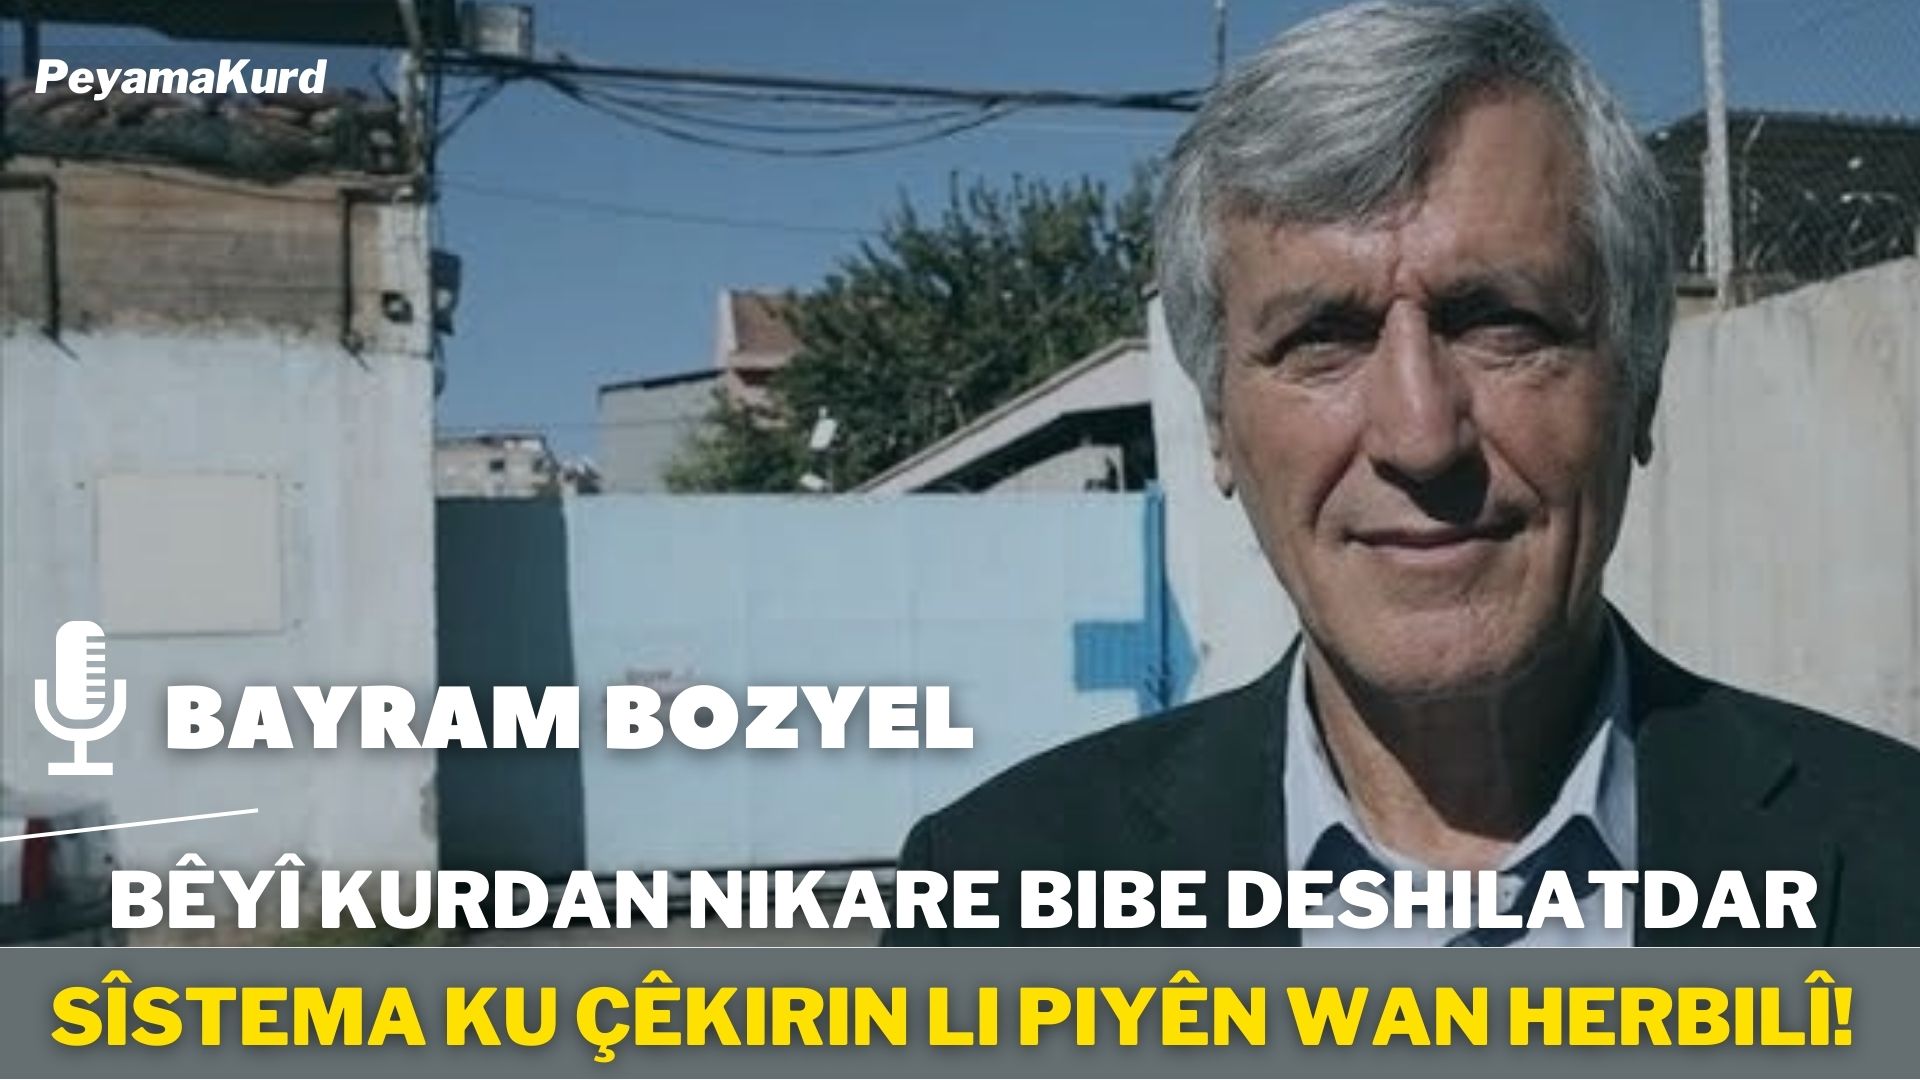 HEVPEYVÎN | Bayram Bozyel: Kurd xwedî roleke kilît in û dikarin sedsala bê garantî bikin